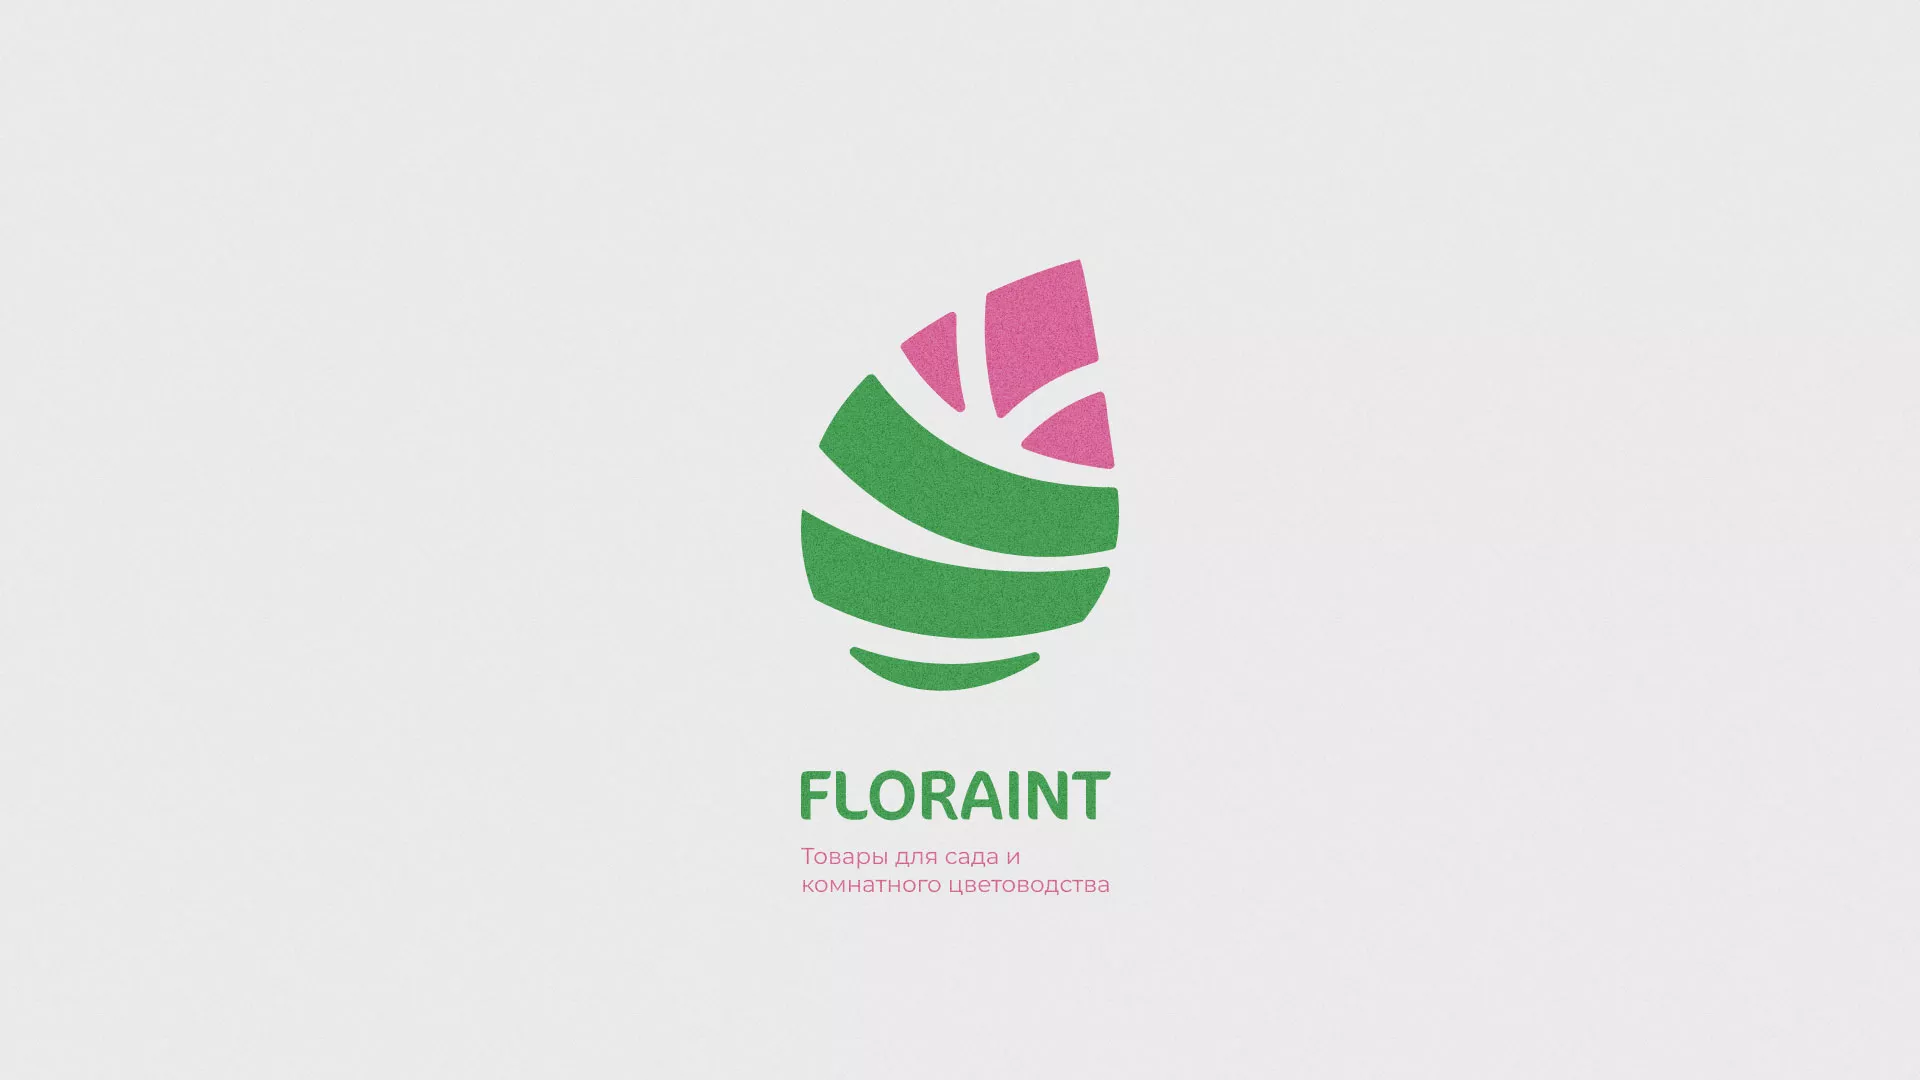 Разработка оформления профиля Instagram для магазина «Floraint» в Орехово-Зуево